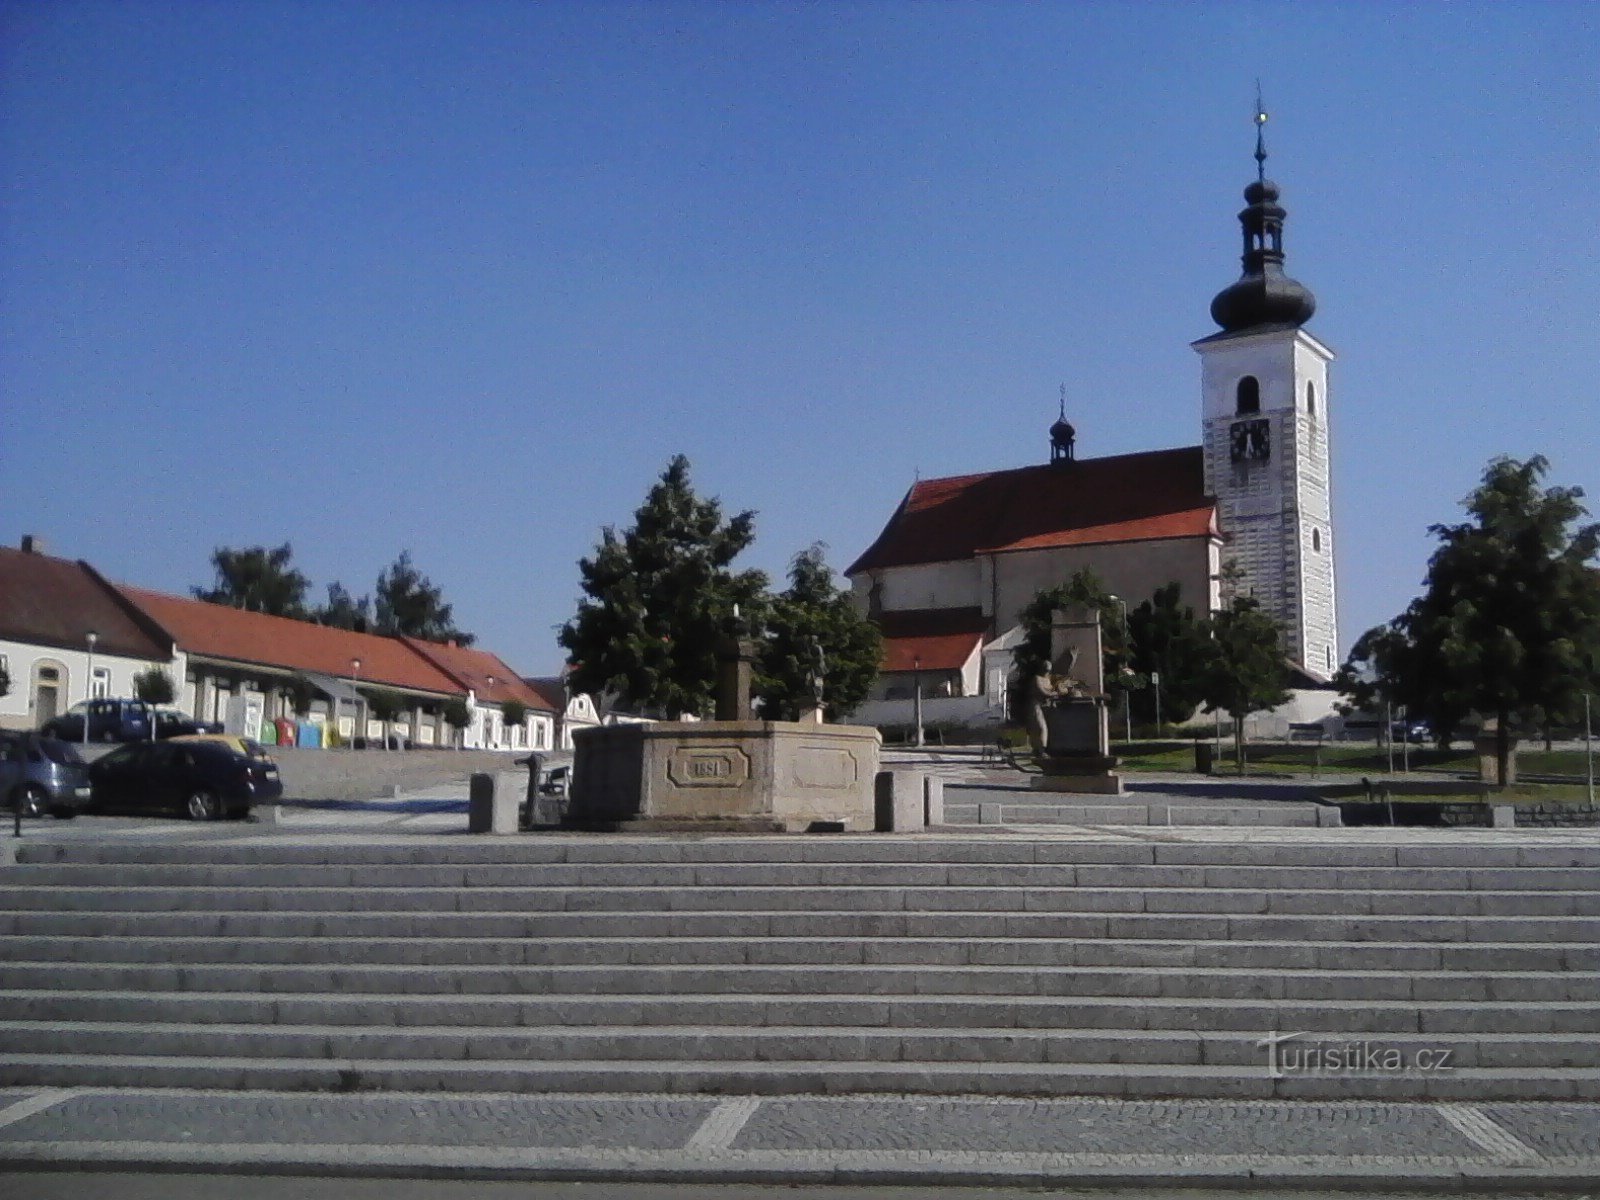 2. Chiesa di S. Vavřinec a Prčica è originariamente romanica, fu fondata nel XII, forse in